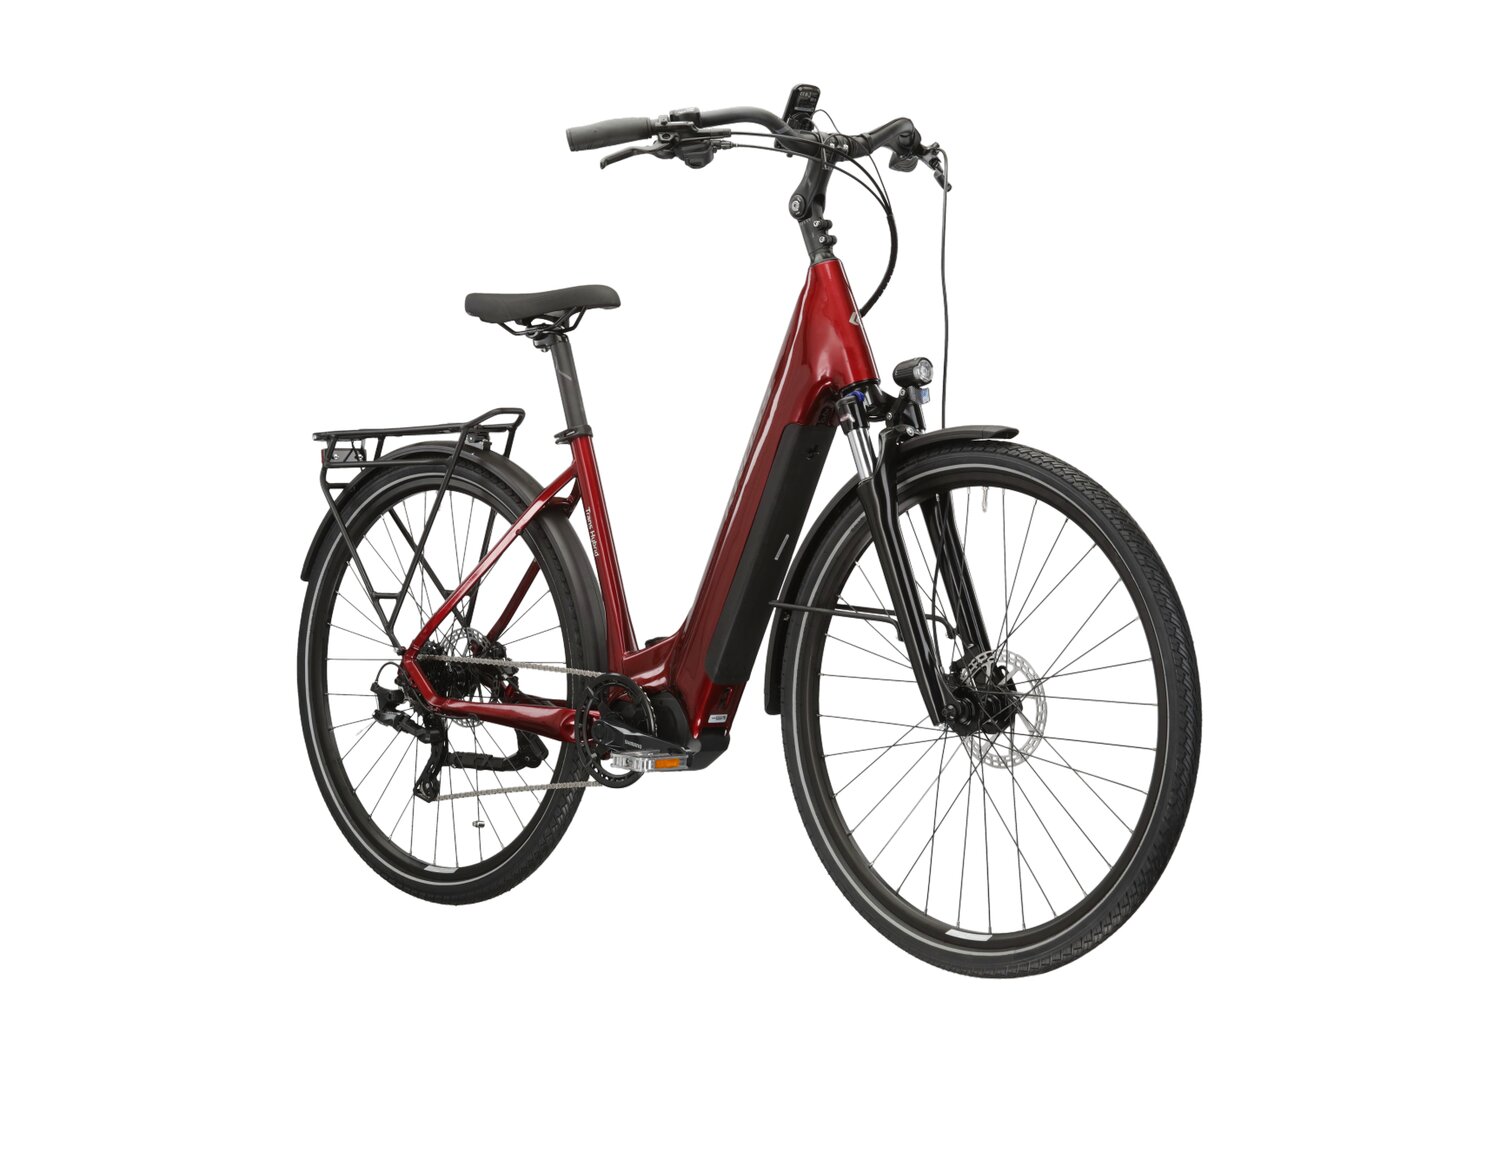  Elektryczny rower trekkingowy KROSS Trans Hybrid LS 3.0 500 Wh na aluminiowej ramie w kolorze rubinowym wyposażony w osprzęt Microshift i napęd elektryczny Bafang